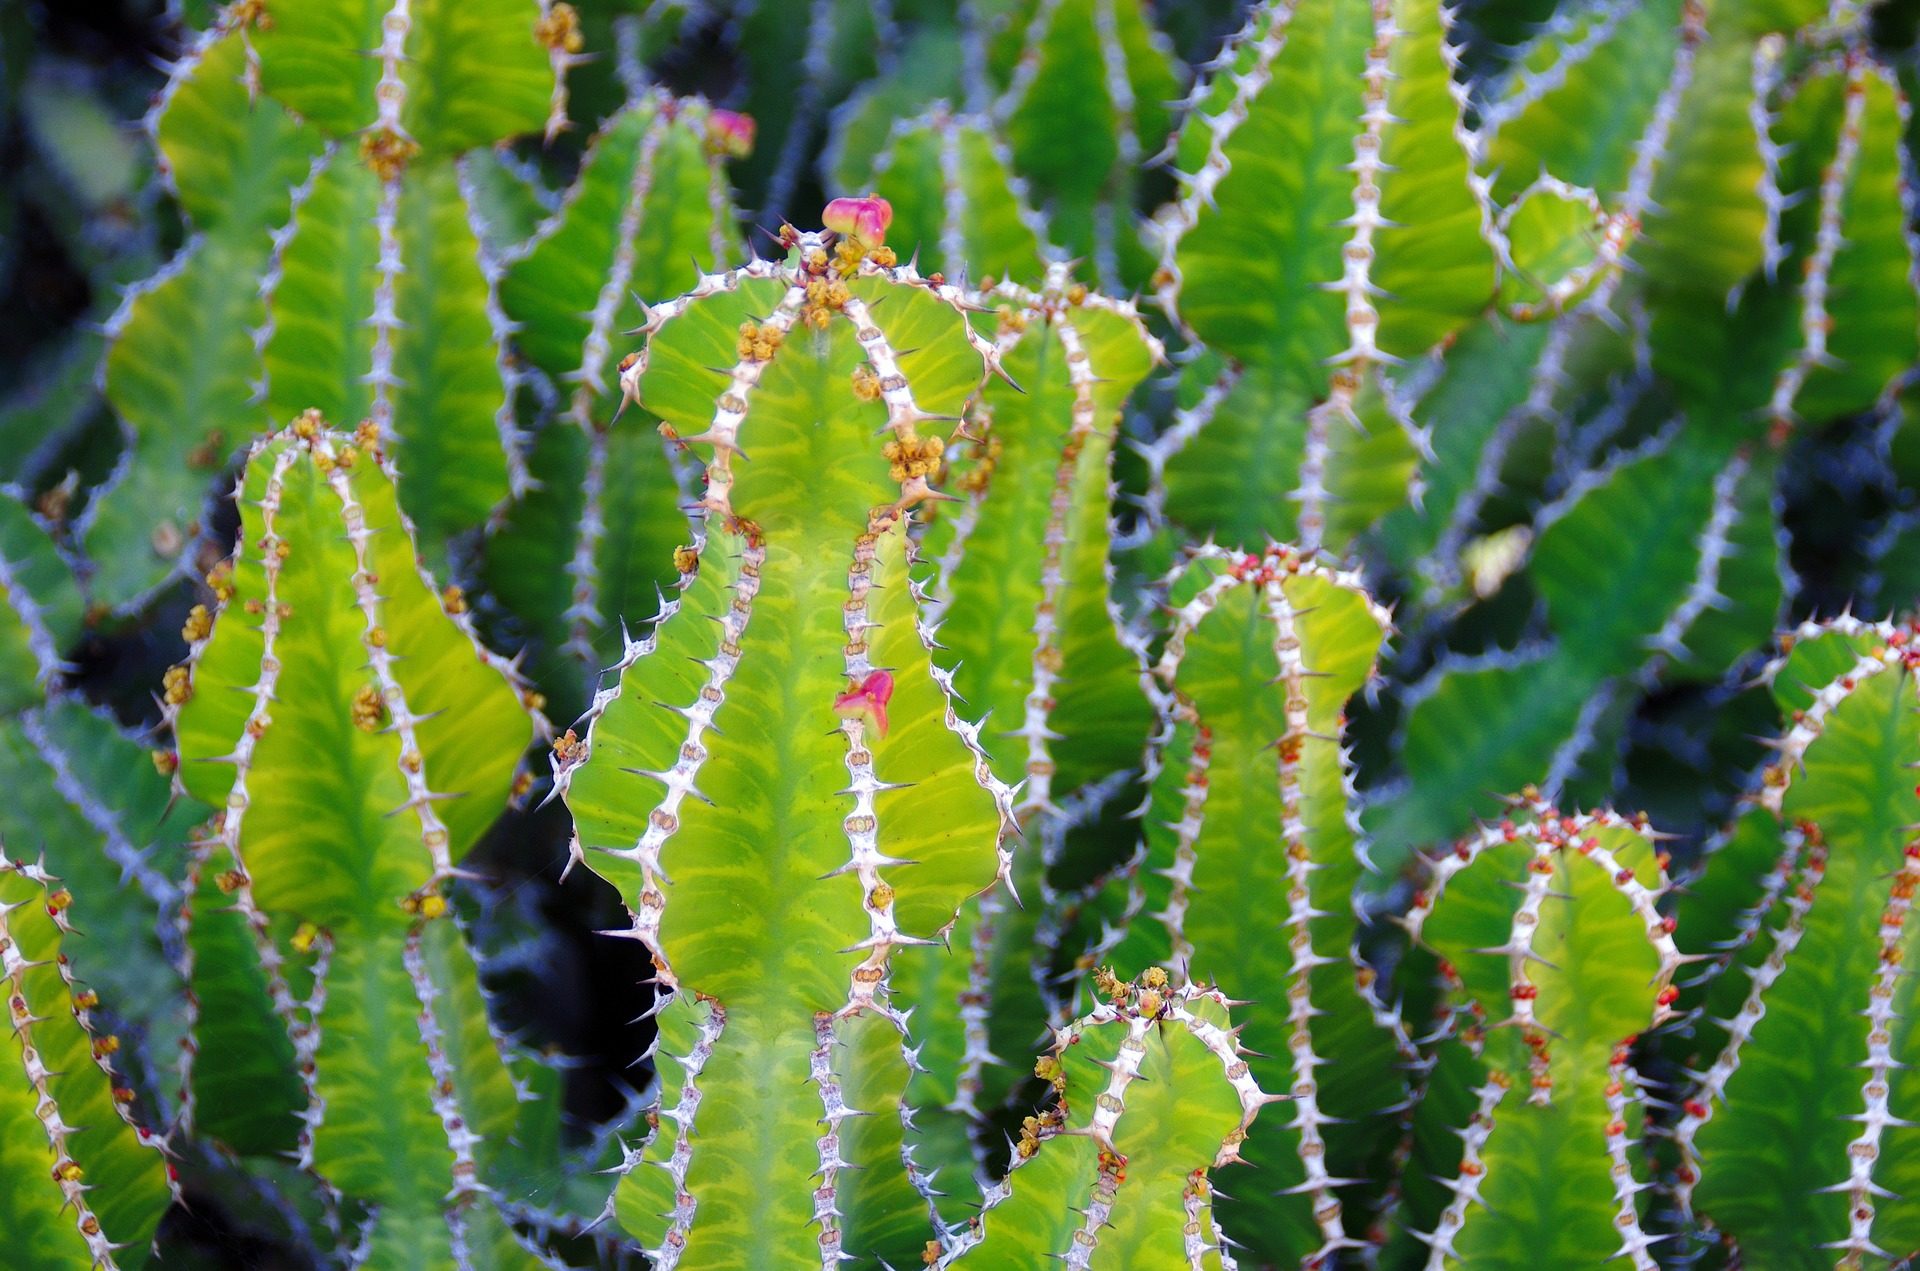 cactus jardin espinas pinchos plantas exoticas Fondos de Pantalla HD professor falken